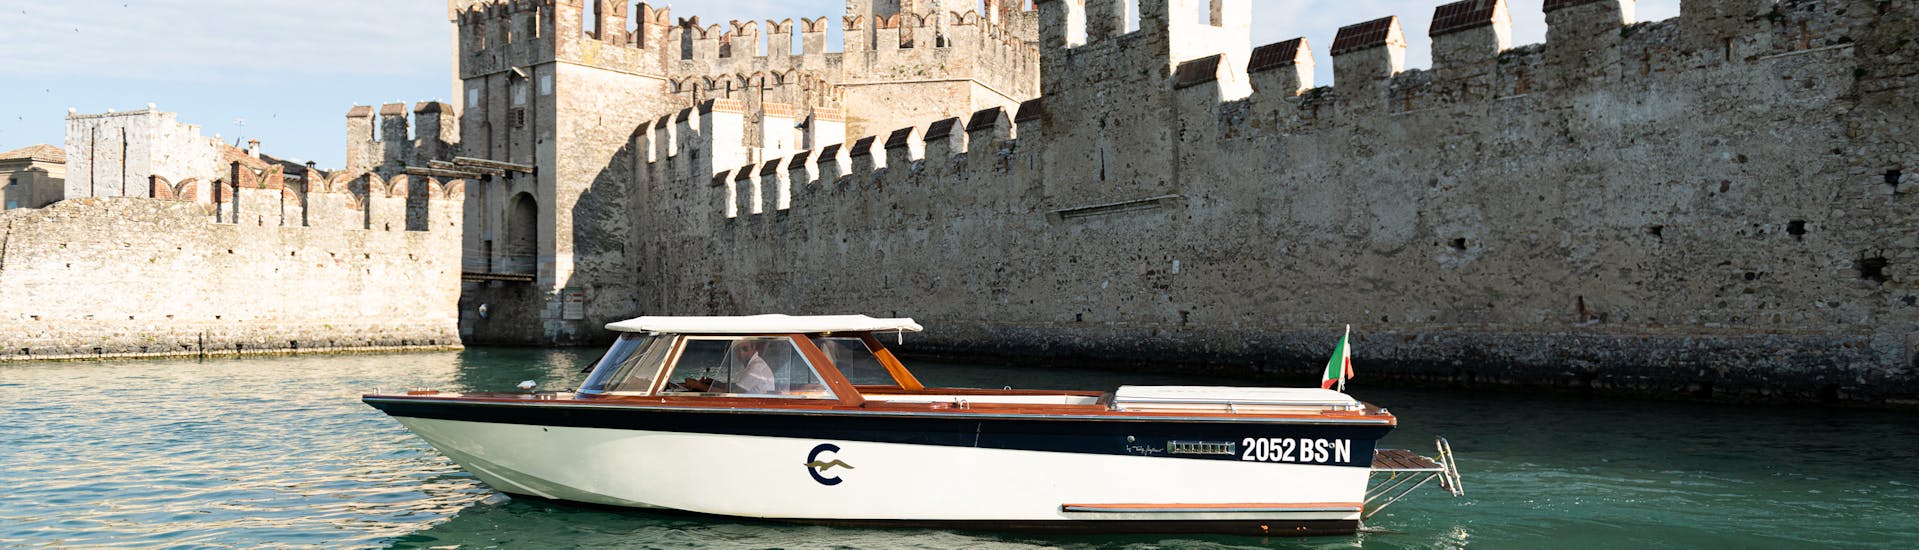 Ein Holzboot im venezianischen Stil vor den Mauern des Scaliger-Schlosses in Sirmione während der privaten Bootstour auf dem Gardasee mit Consolini Boats.